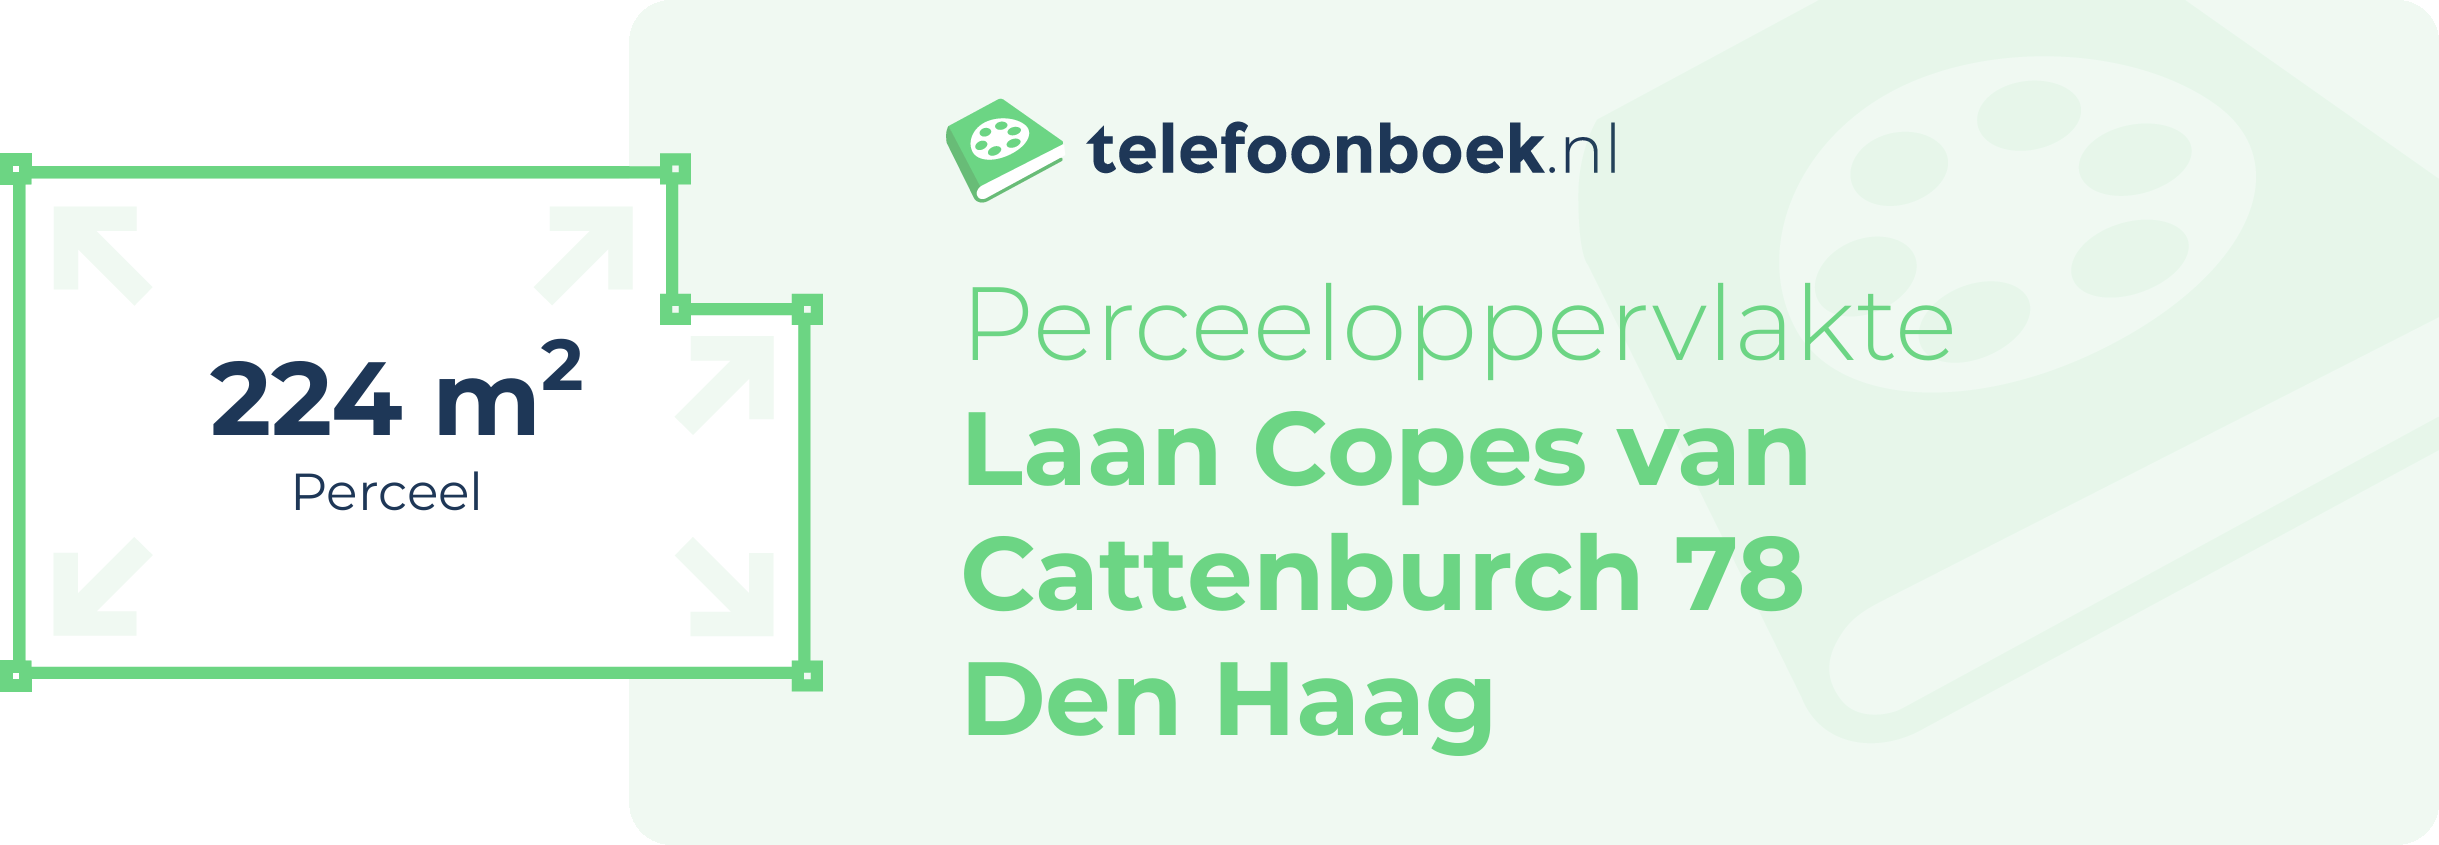 Perceeloppervlakte Laan Copes Van Cattenburch 78 Den Haag